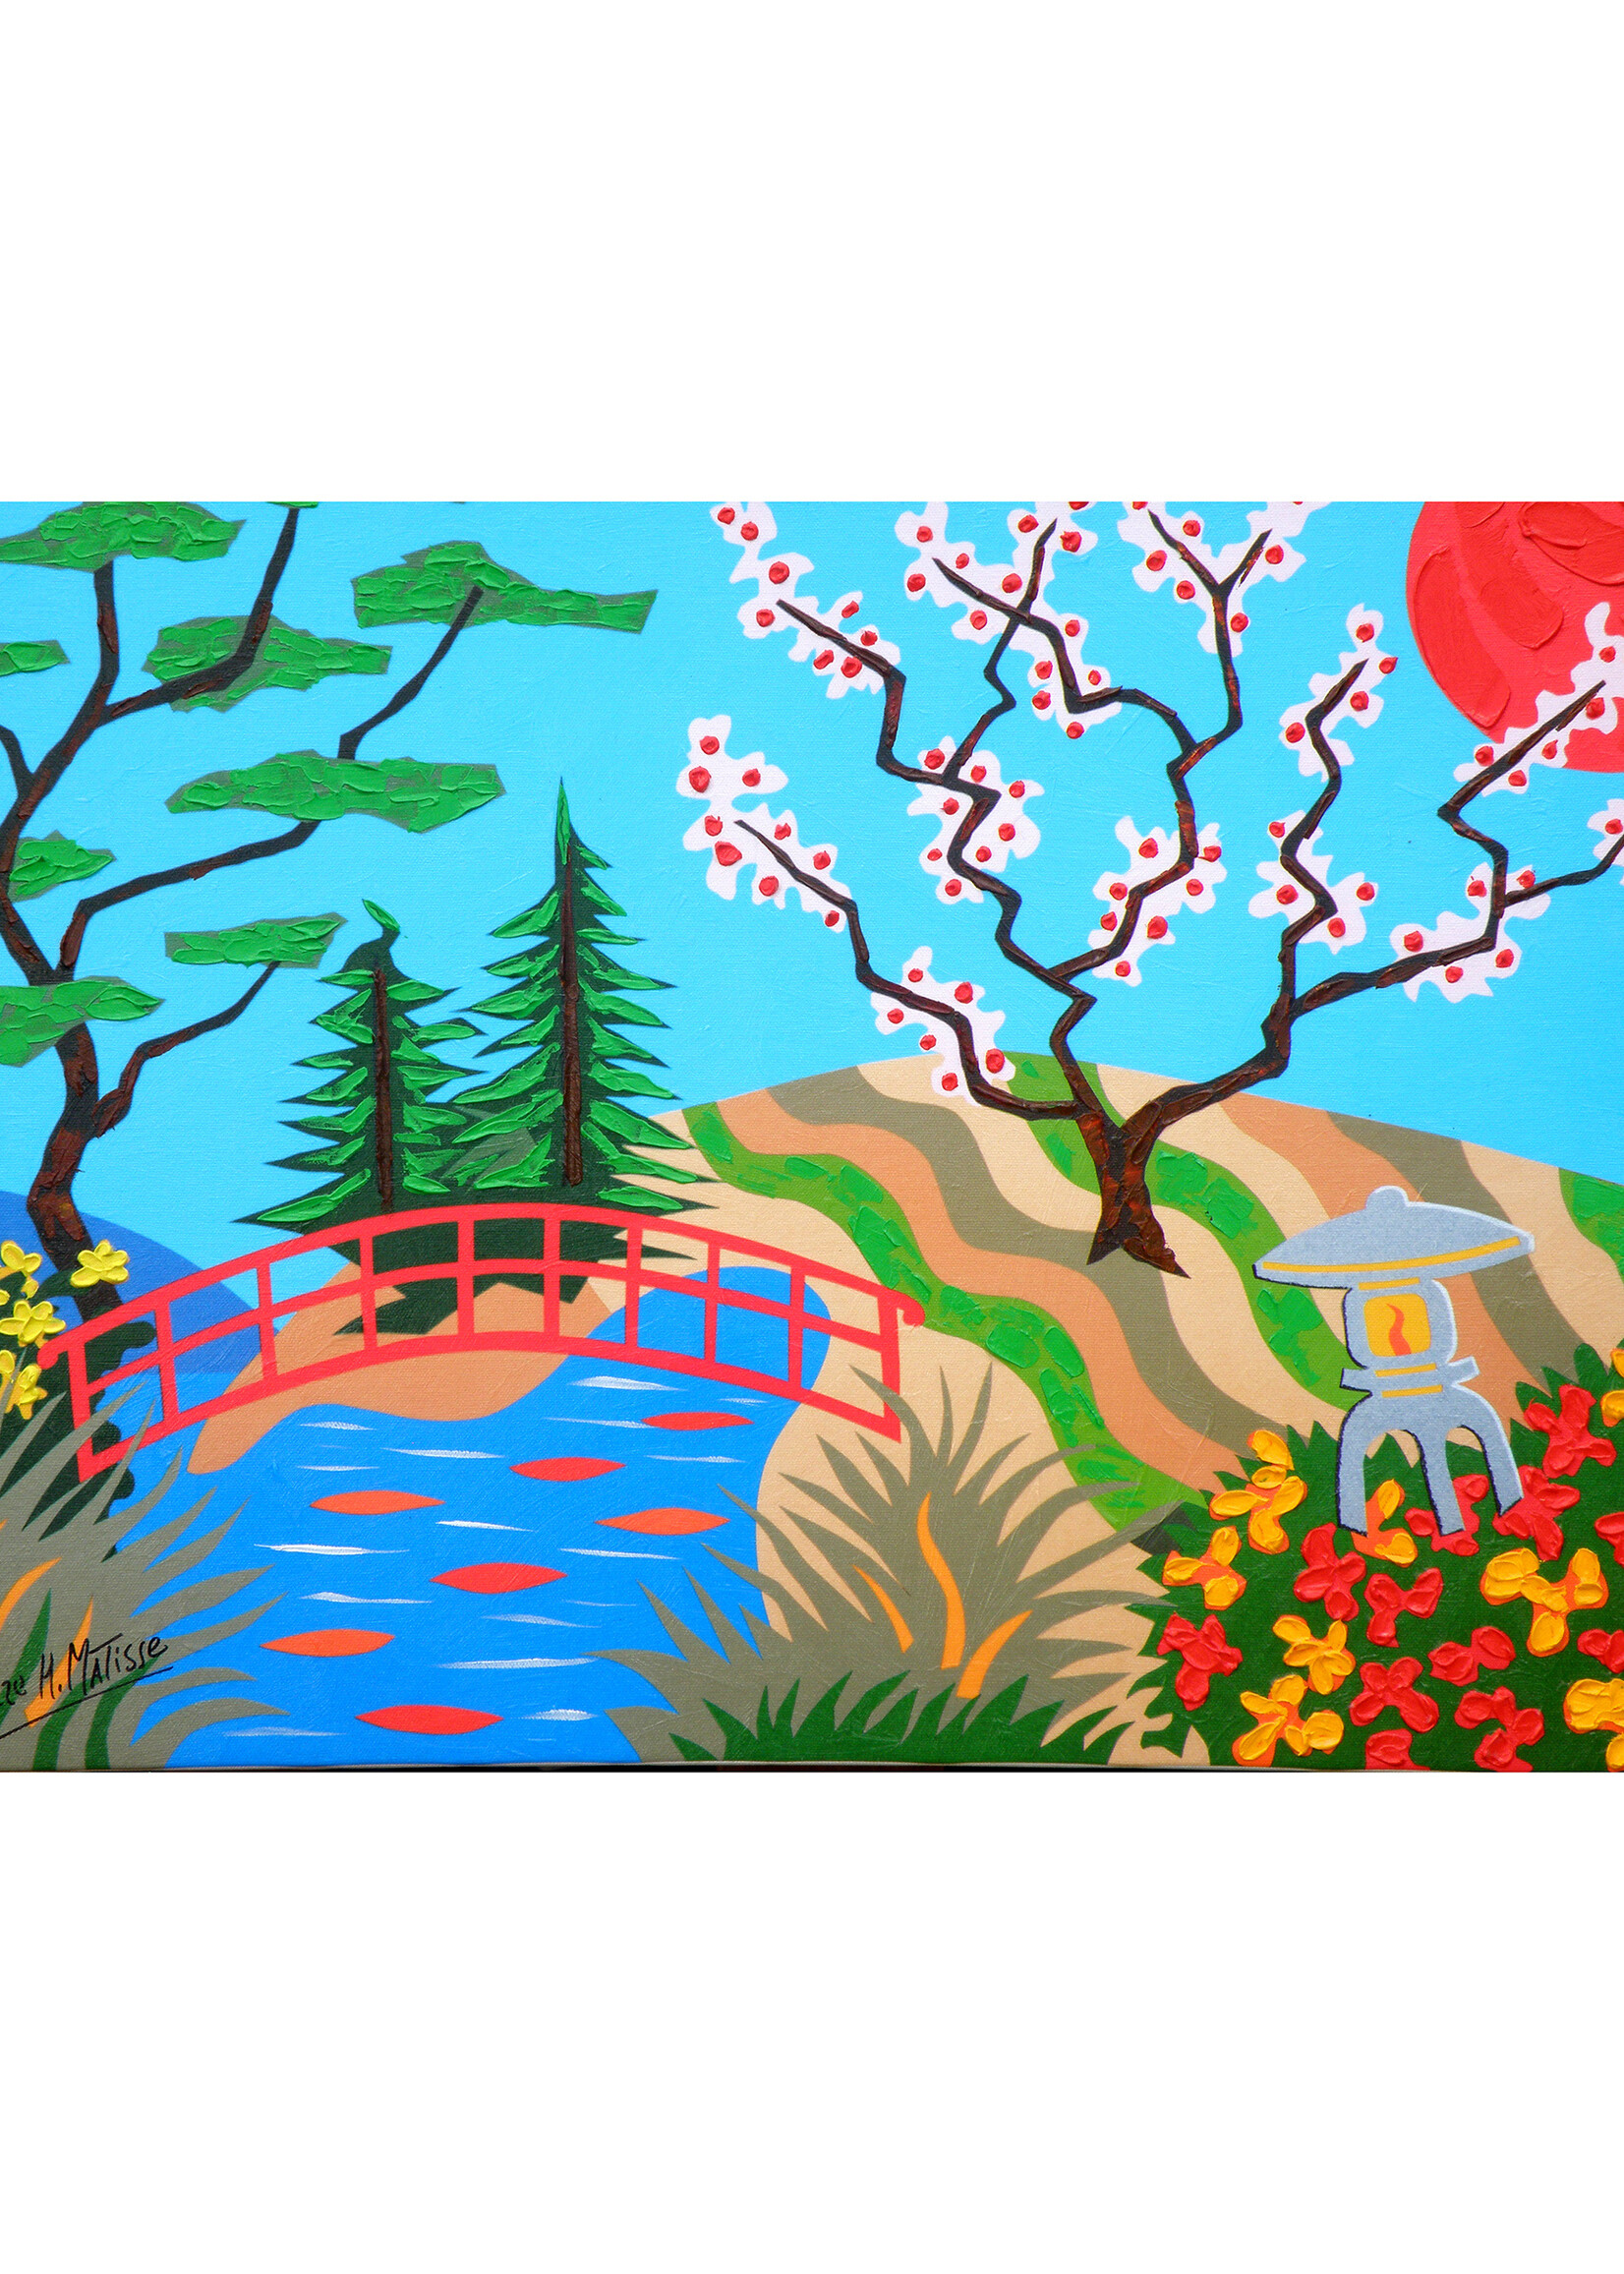 Pierre Matisse Pierre Matisse "Cherry Blossom Bridge"